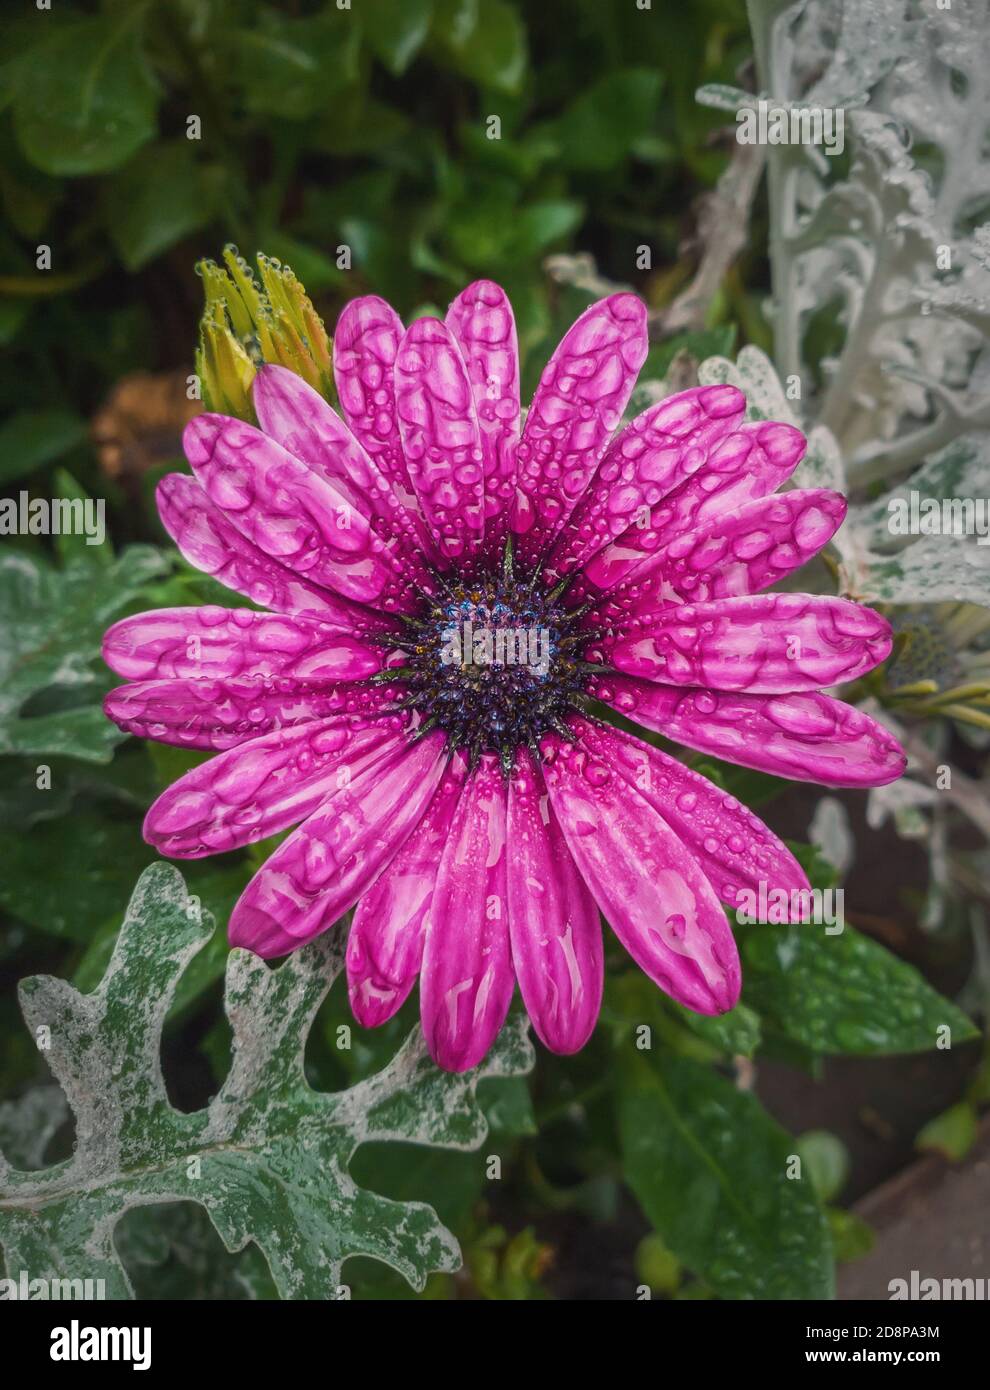 Gros plan de l'aster violet en fleurs avec des gouttes de rosée sur les pétales. Belle fleur d'automne humide après la pluie. Fleur de couleur magenta naturelle dans le jardin, g Banque D'Images